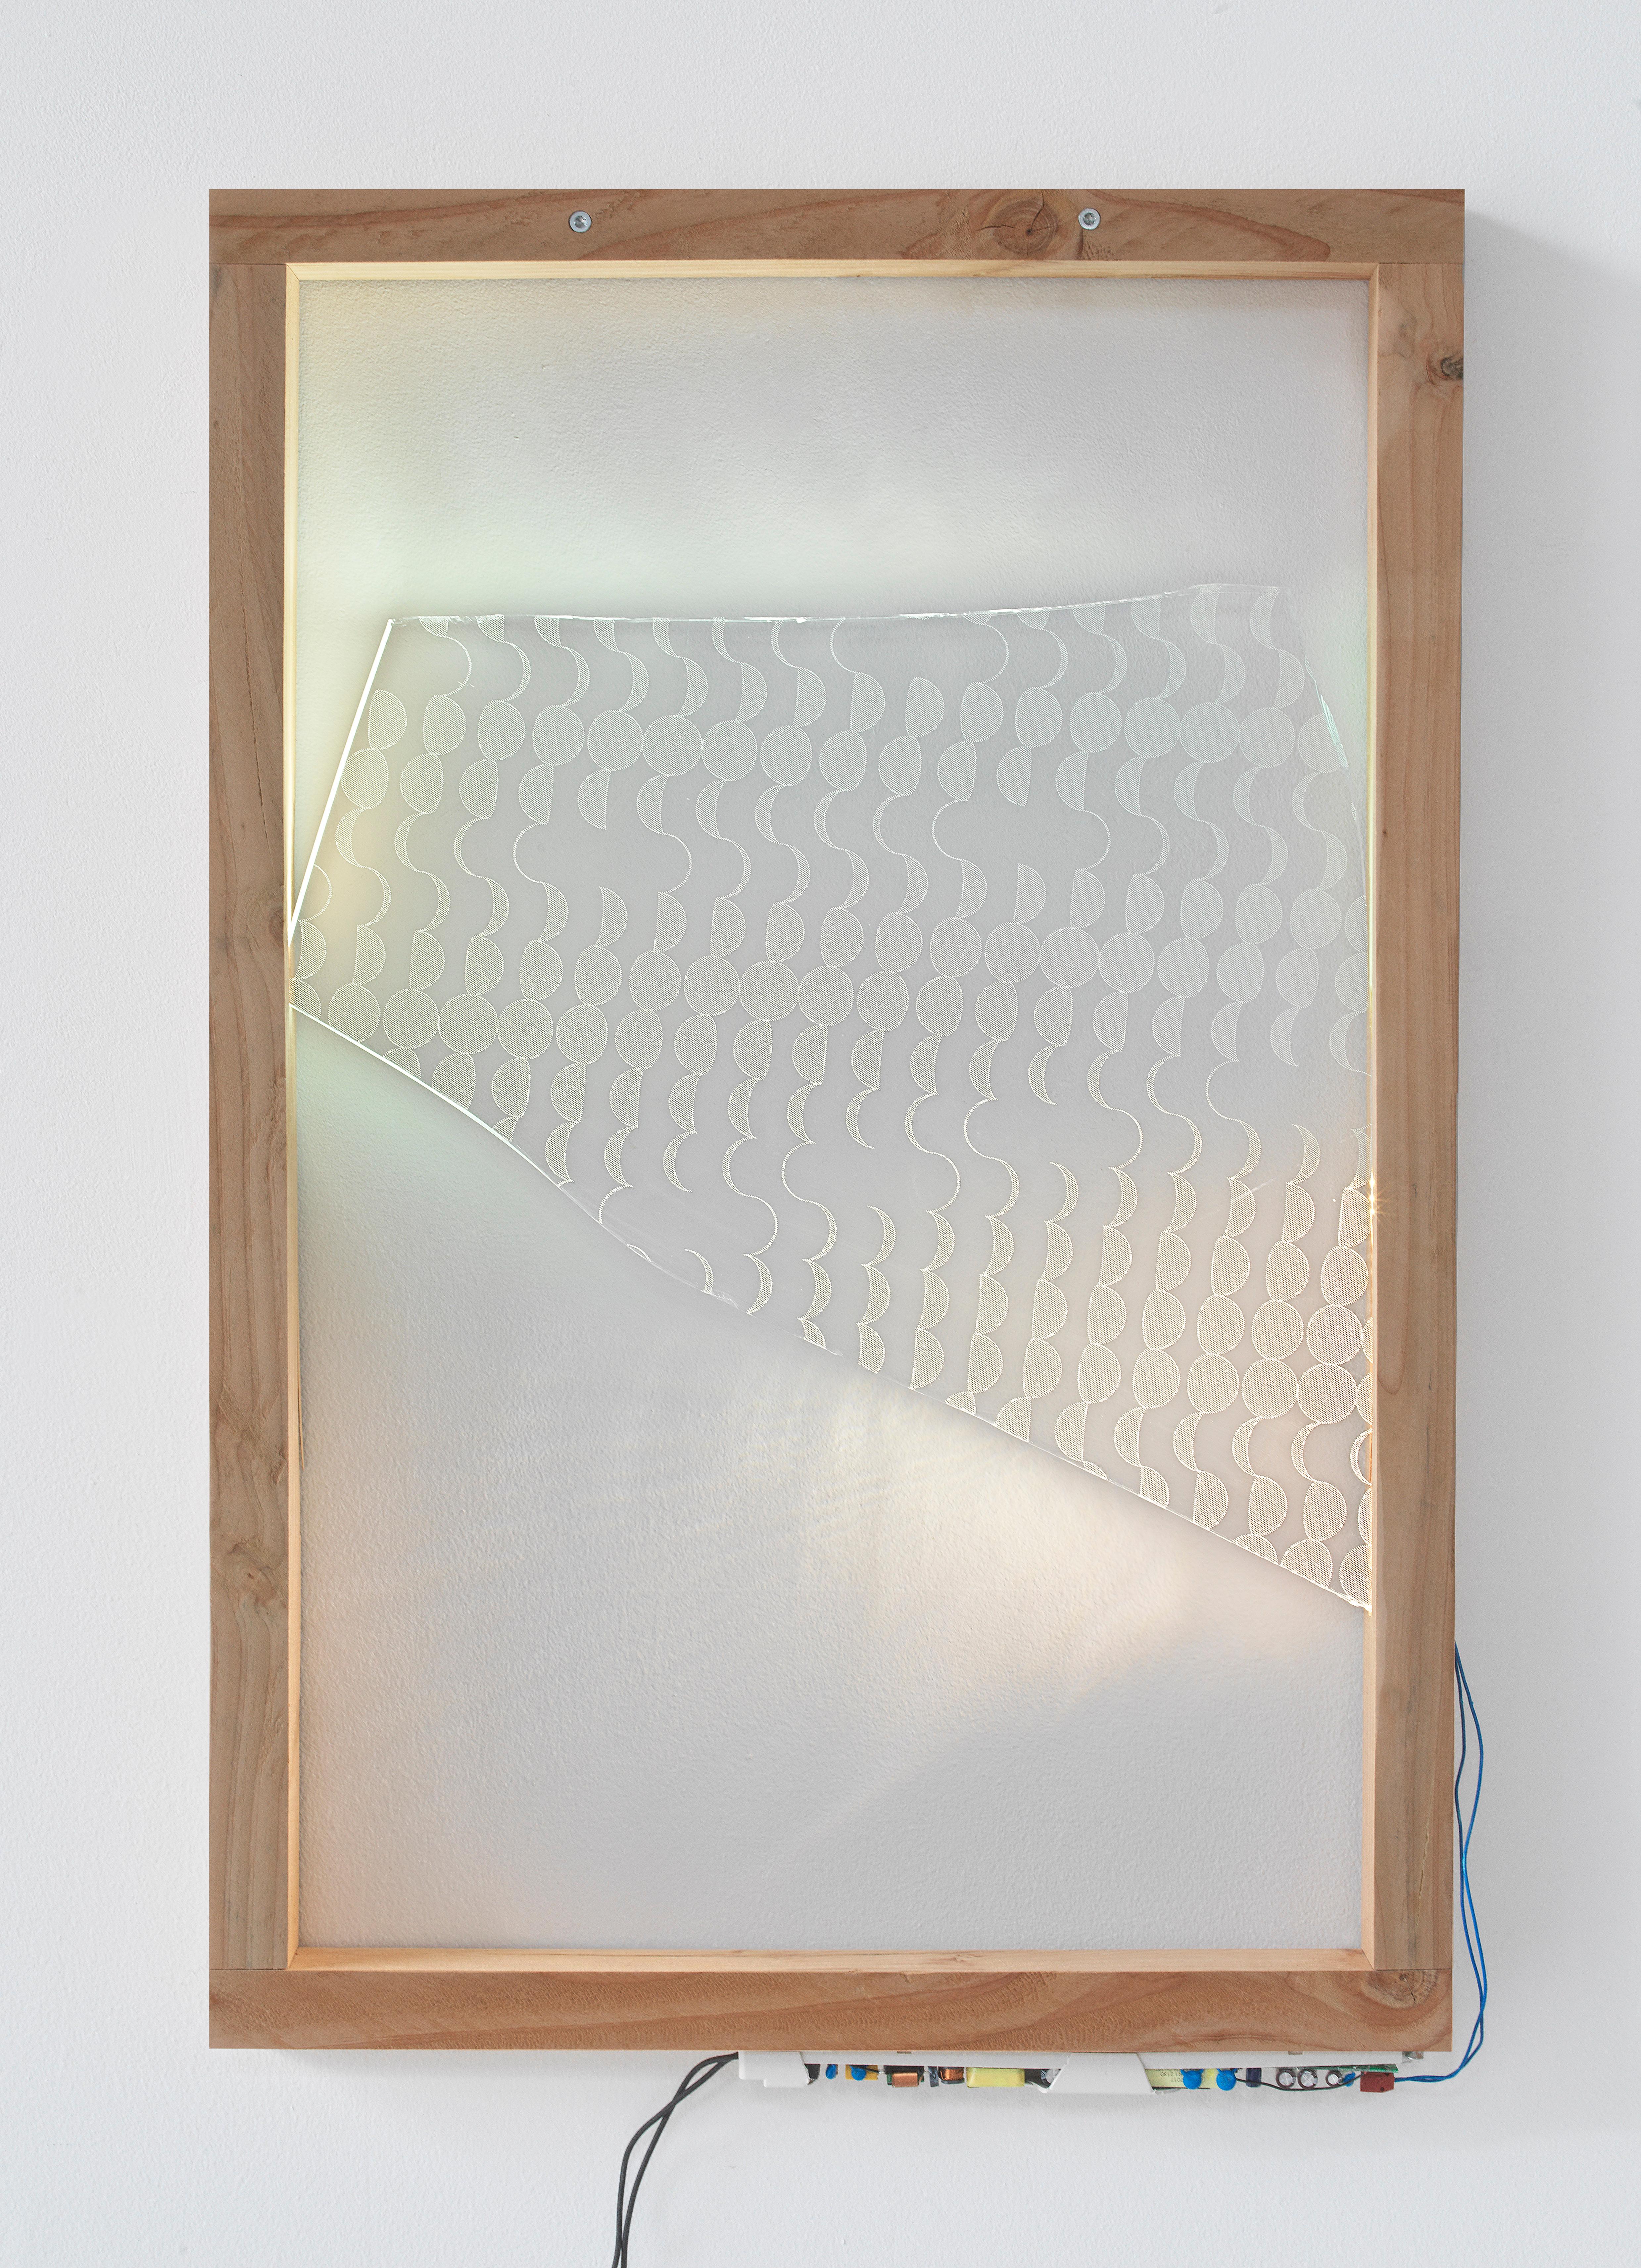 Für die Ausstellung Double Glazing hinterfragt Arnout Meijer die dem Design innewohnende Doppelmoral von Schöpfung und Zerstörung. Es scheint sich um zwei gegensätzliche Ziele zu handeln, aber die aktuelle ökologische Situation zeigt, dass Schöpfung